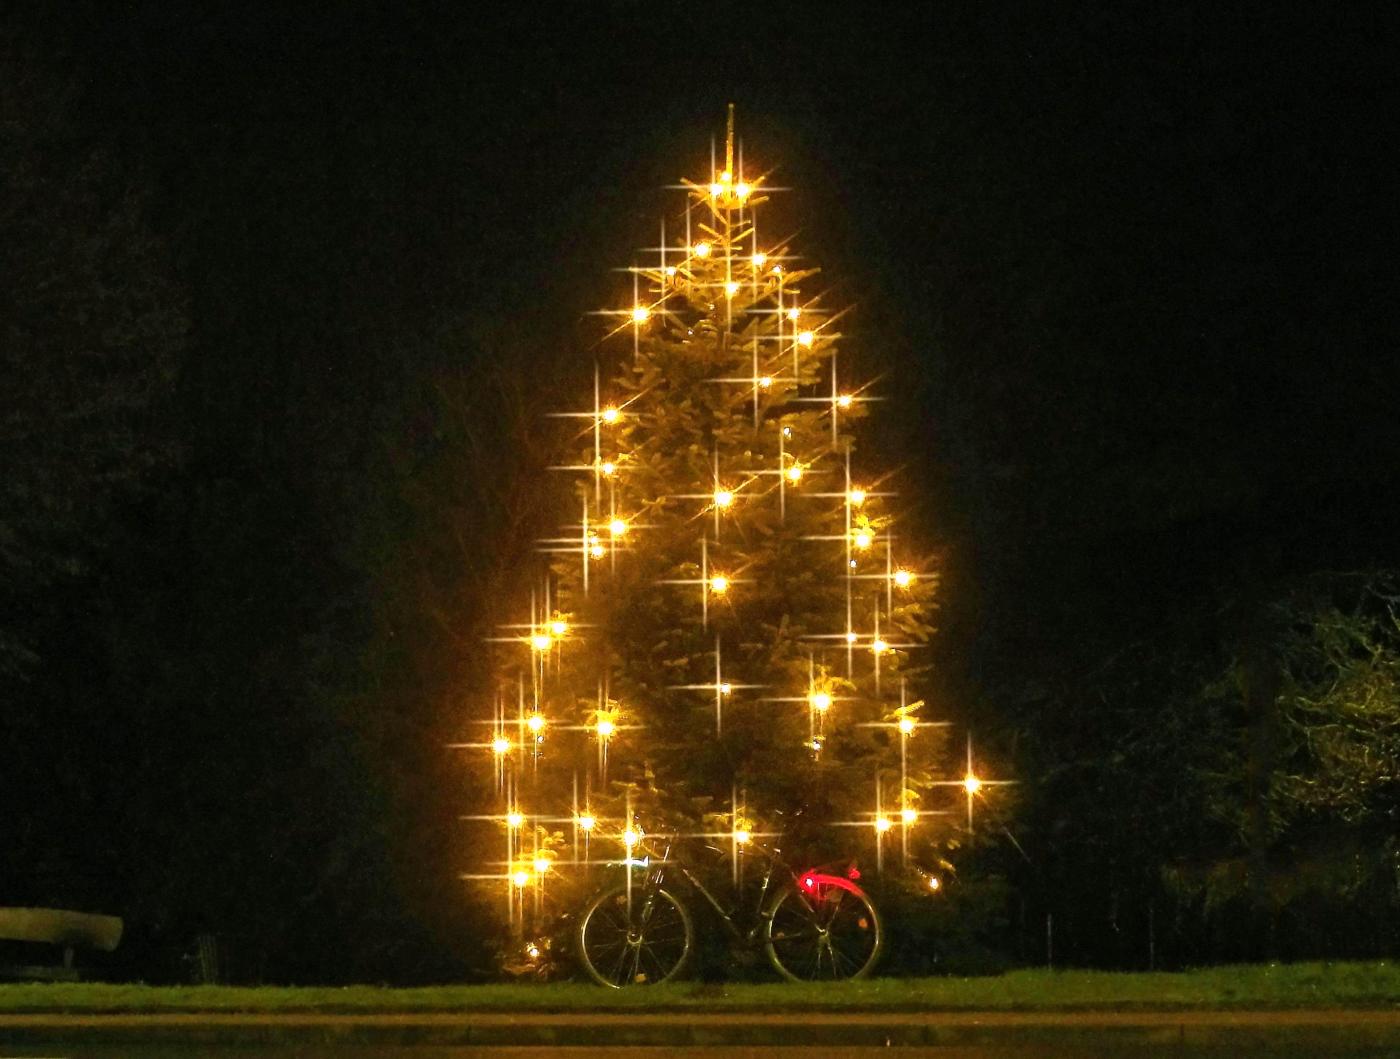 Radelnder Weihnachtsbaum :-)